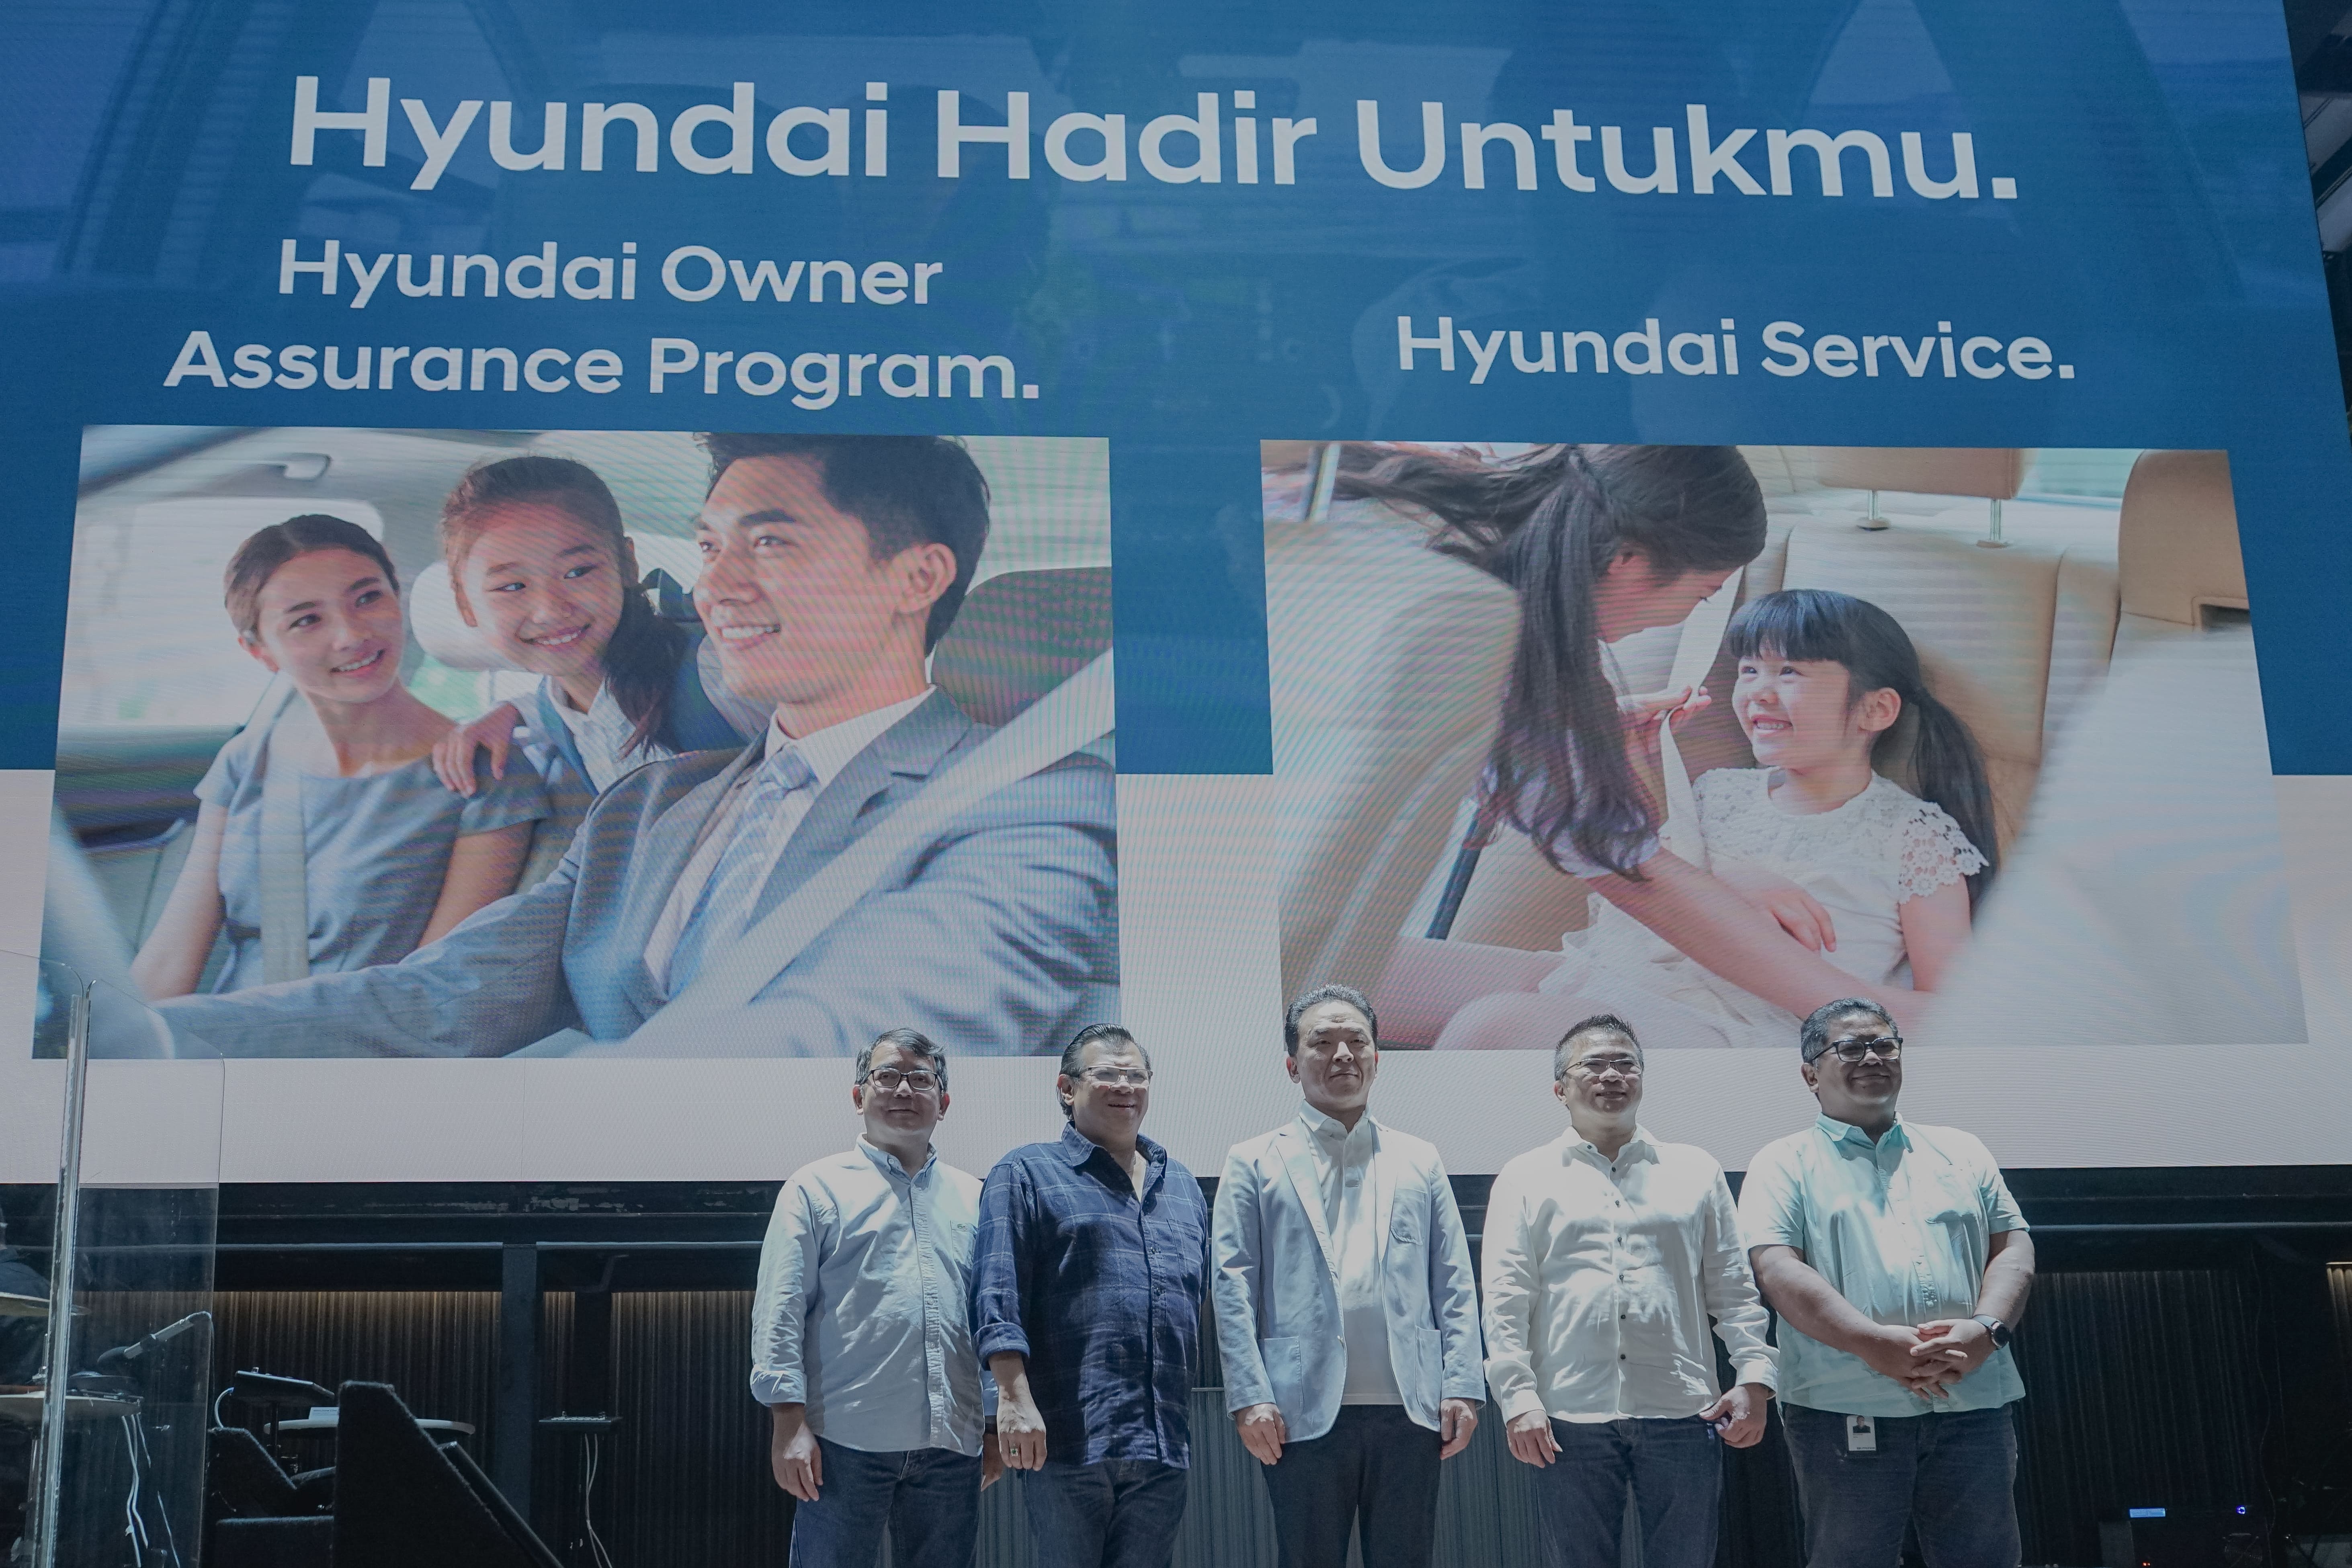 Sambut 2023, Hyundai Perkenalkan Inovasi Purnajual Terbaru 'Hyundai Hadir Untukmu'